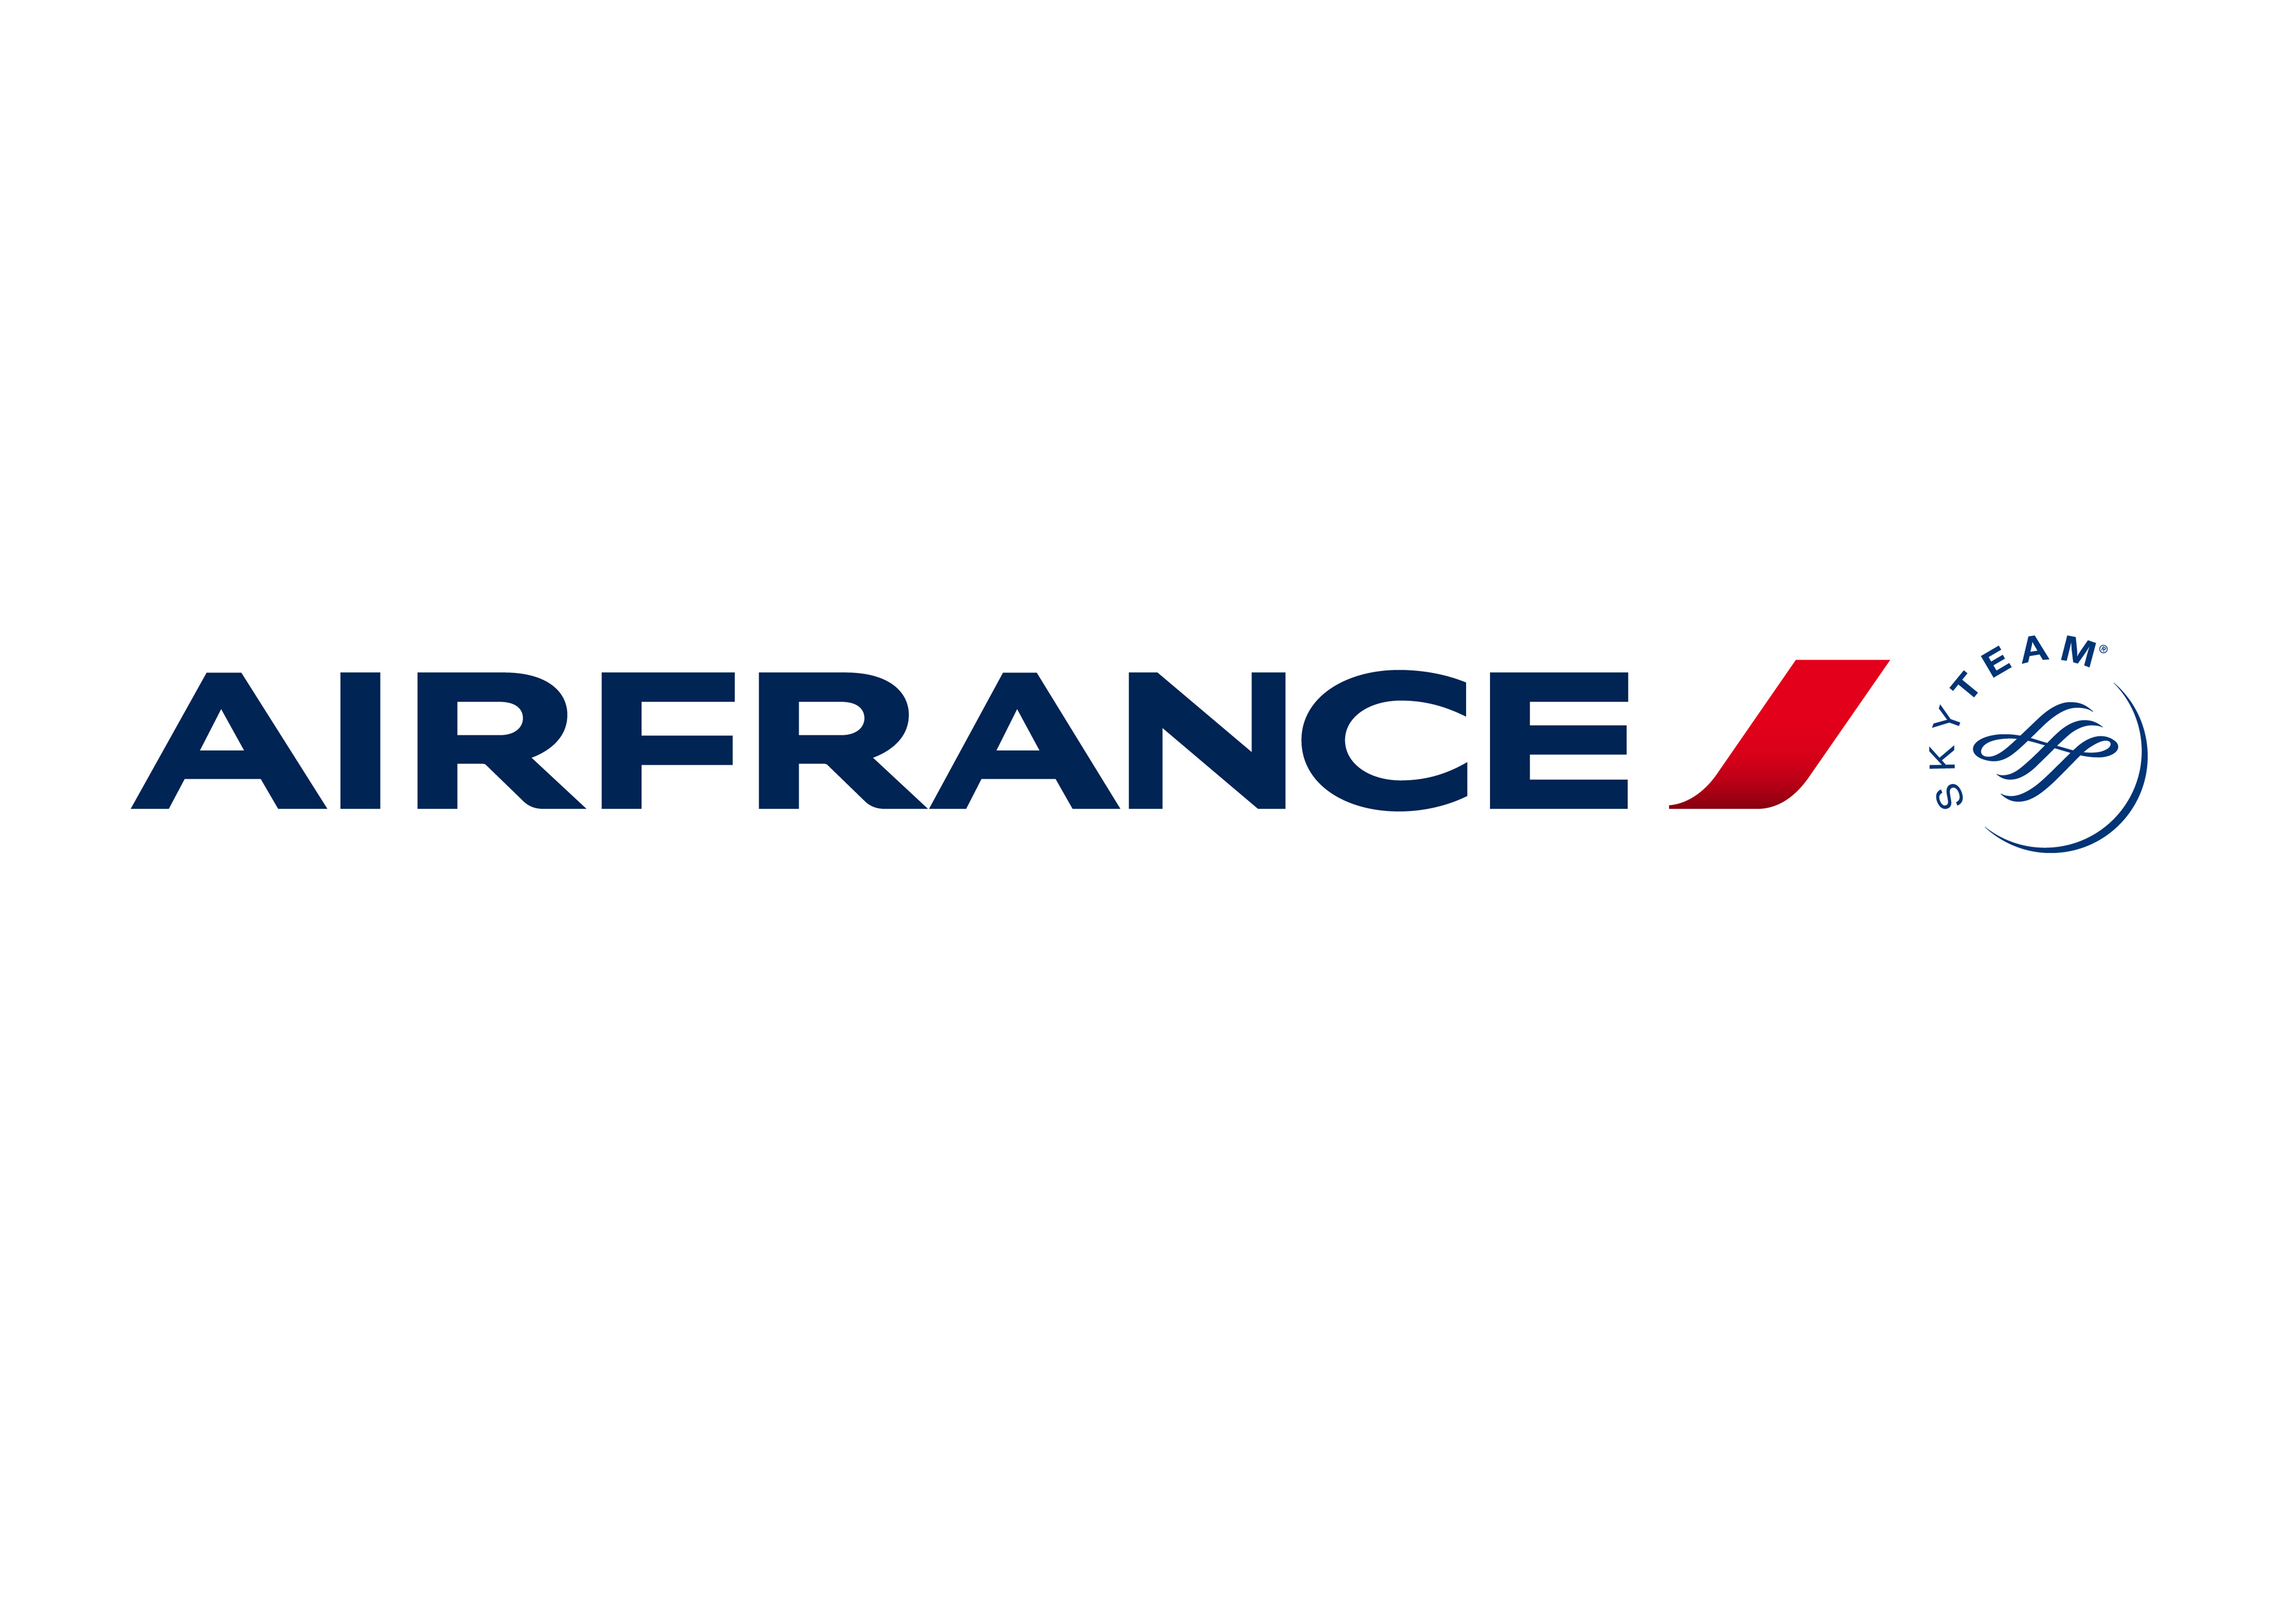 airfrance_logo.jpg